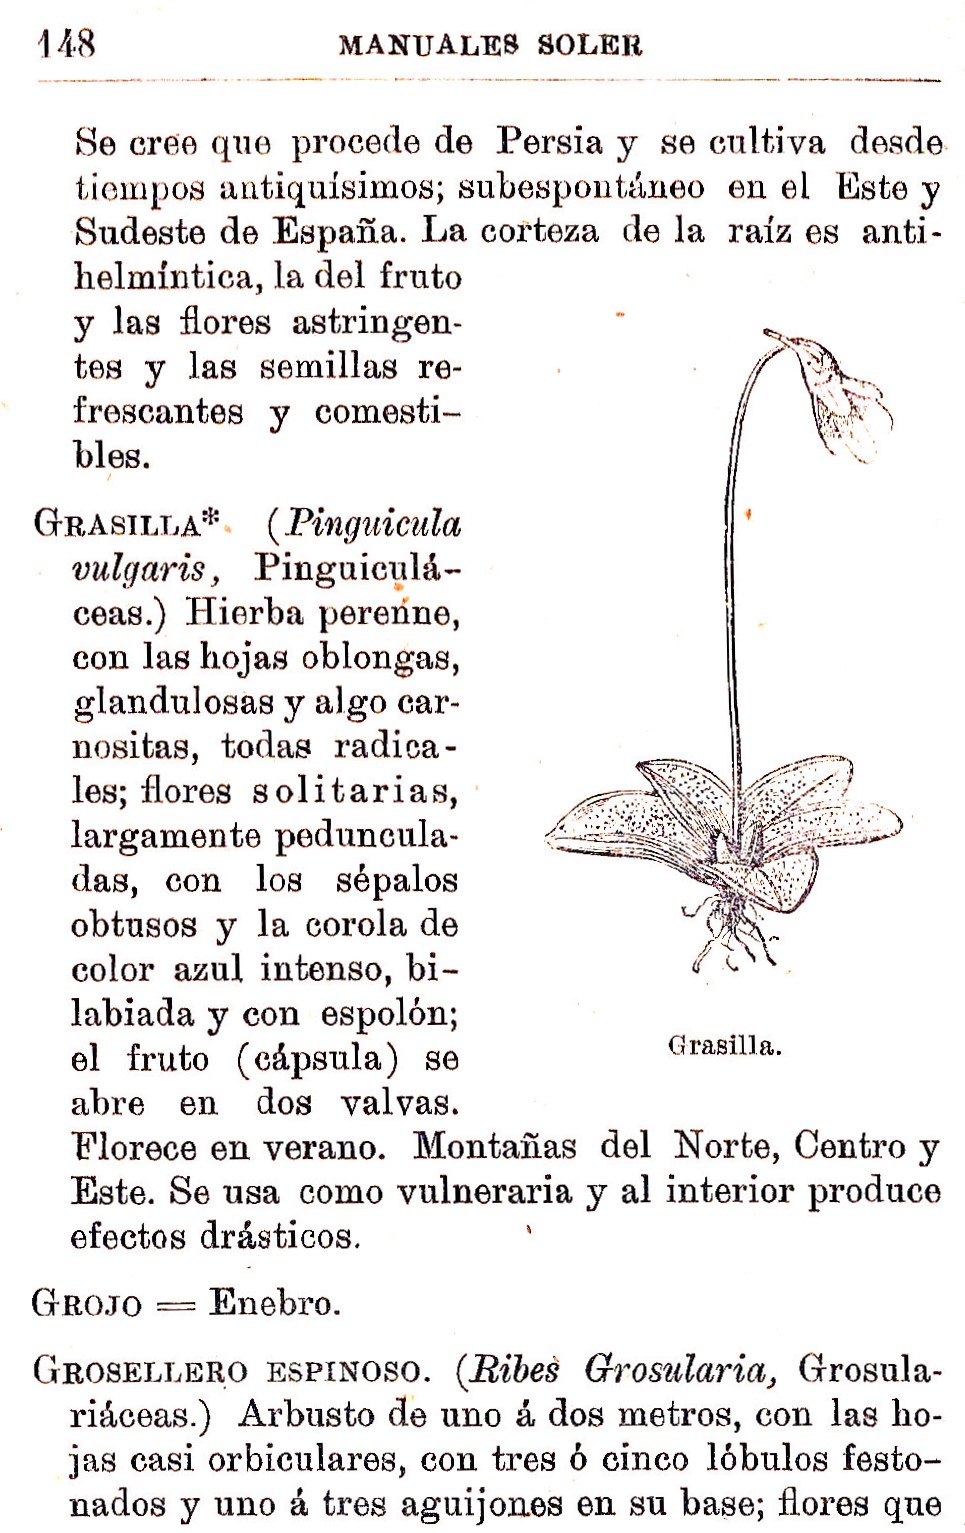 Plantas Medicinales. Blas Lazaro Ibiza. Índice alfabético de plantas. G. Grasilla.